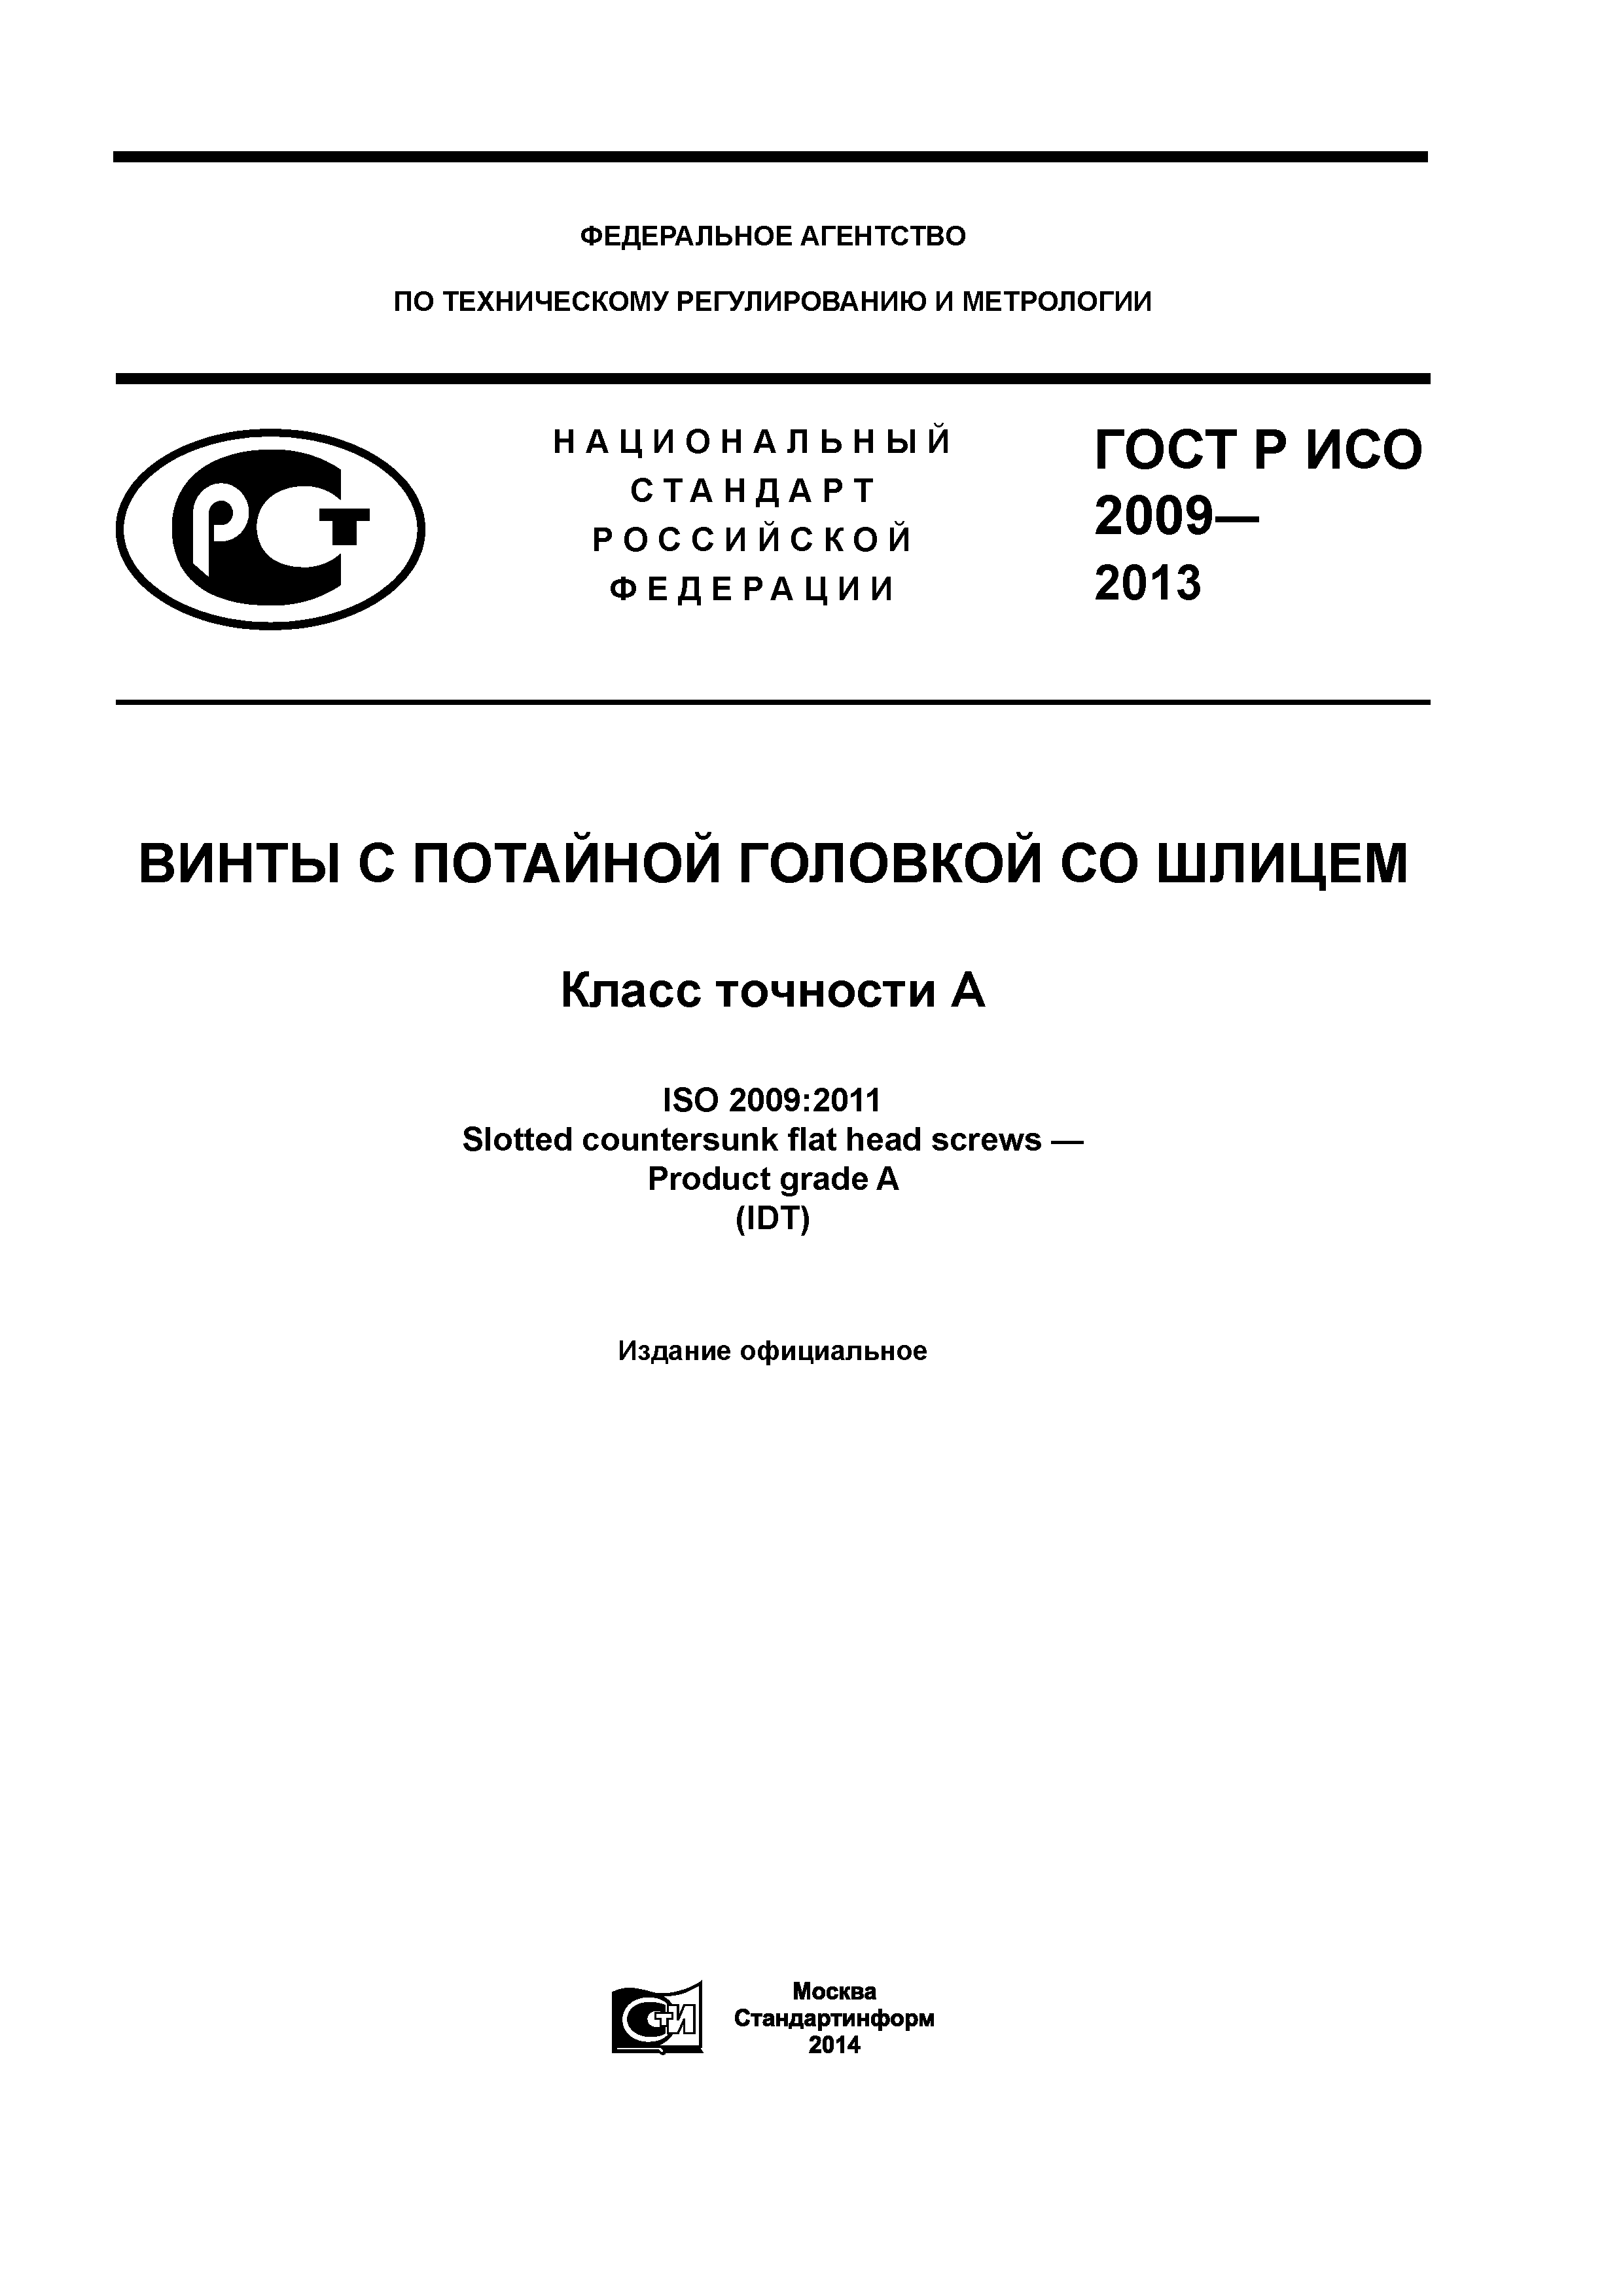 ГОСТ Р ИСО 2009-2013